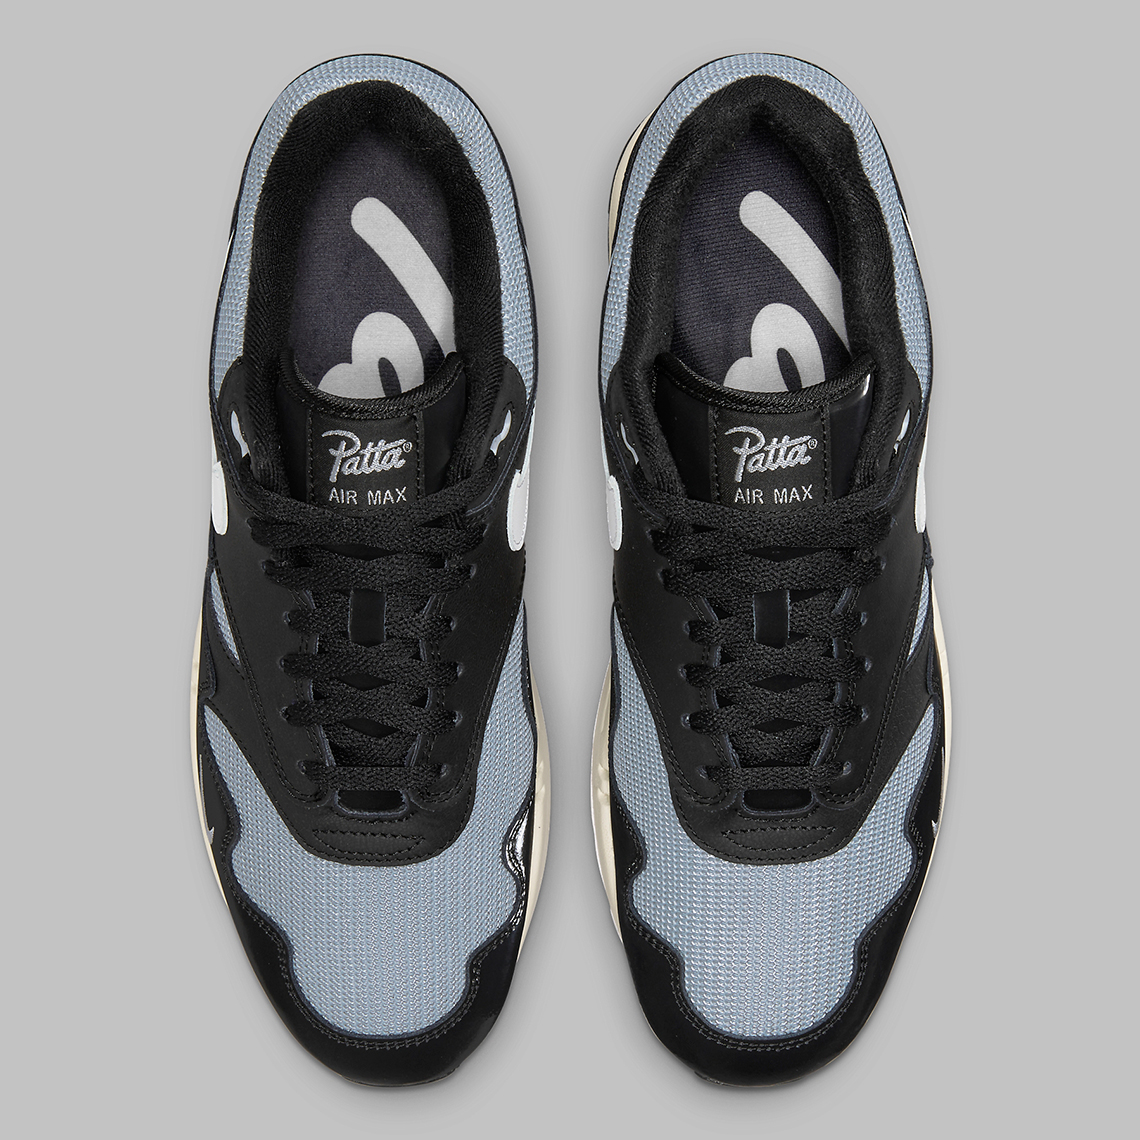 Patta Nike Air Max 1 Black Silver DQ0299-001 | SneakerNews.com